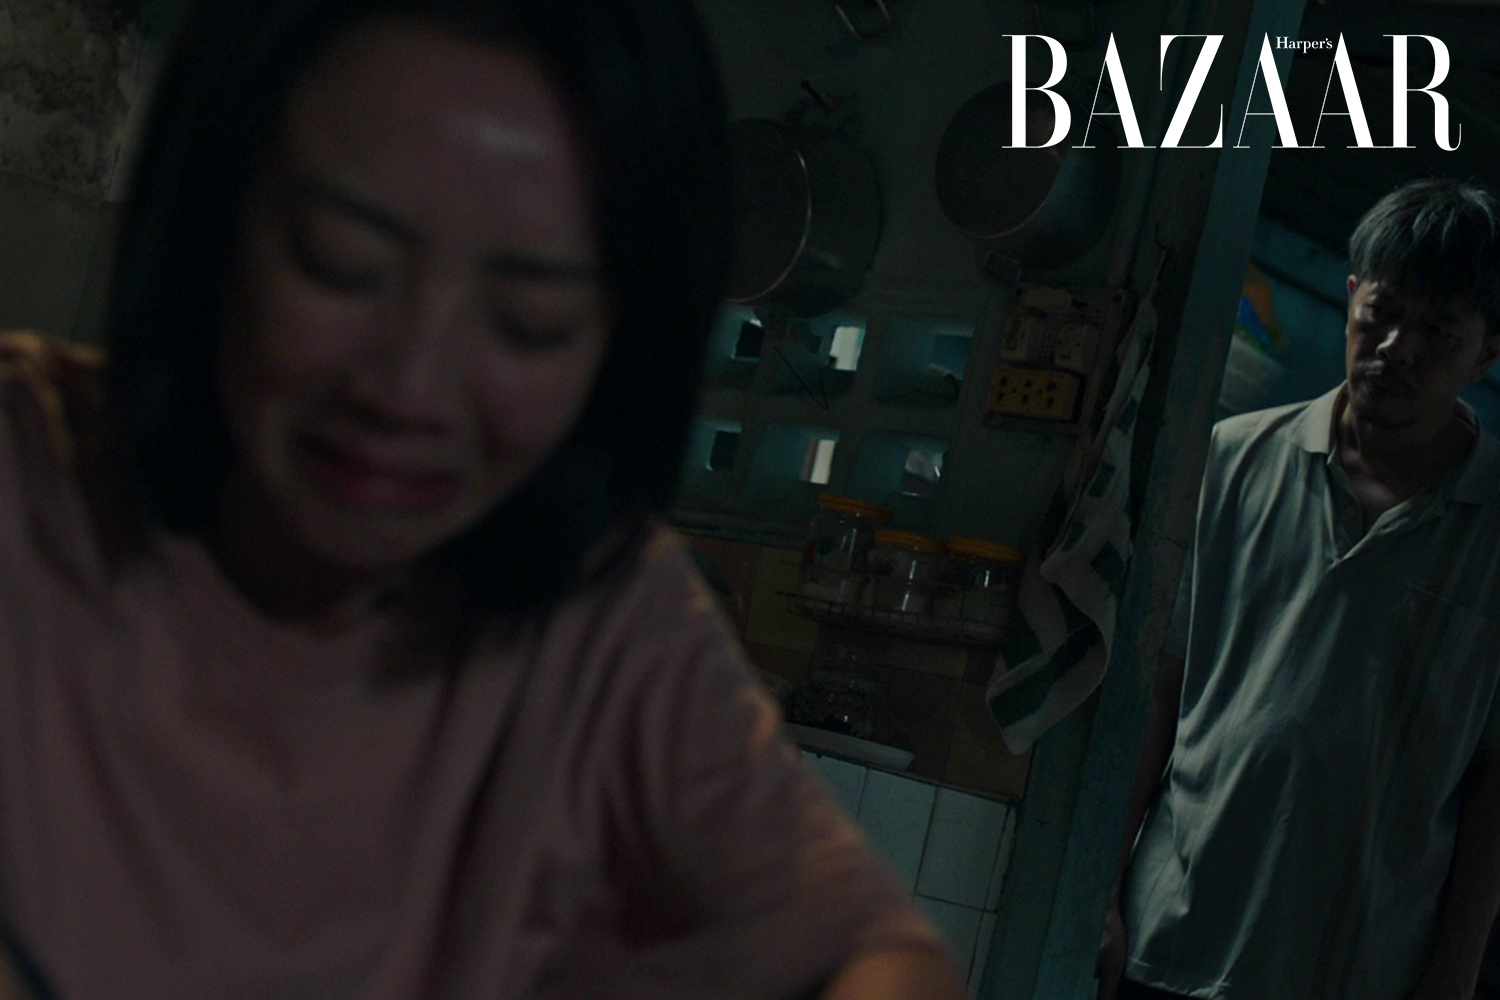 Harper's Bazaar_MV Tôi thương ba của Văn Mai Hương và Hồ Trung Dũng_05